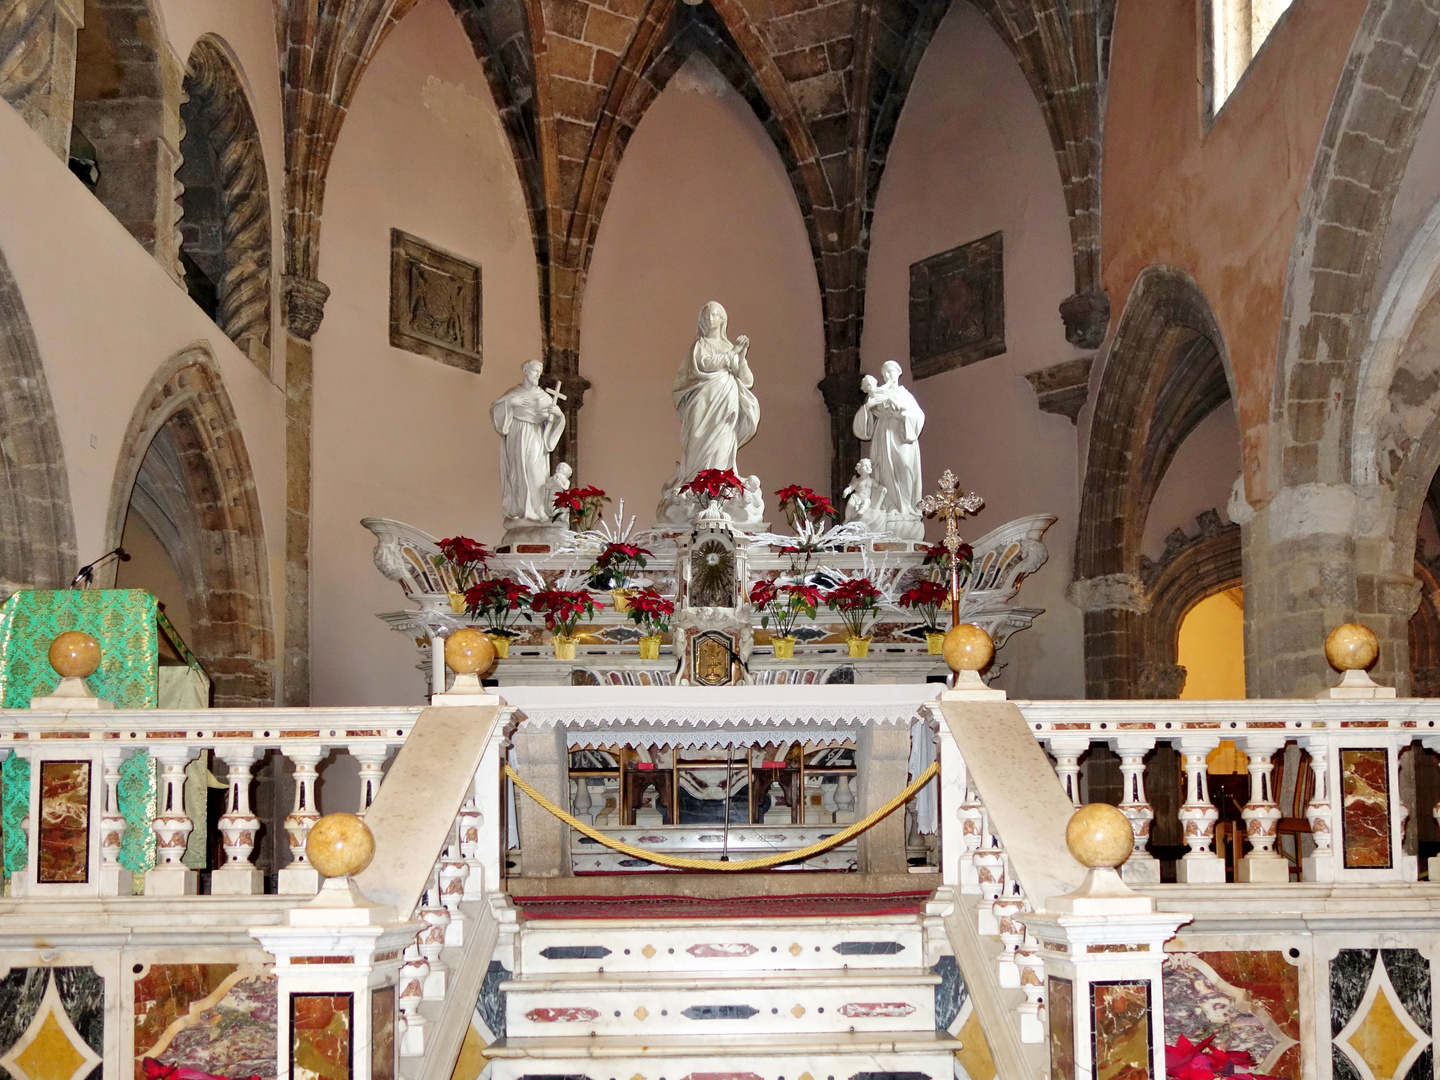 Altare Maggiore Chiesa Di San Francesco Alghero Foto Immagini Architetture Architetture Sacre Alghero Foto Su Fotocommunity